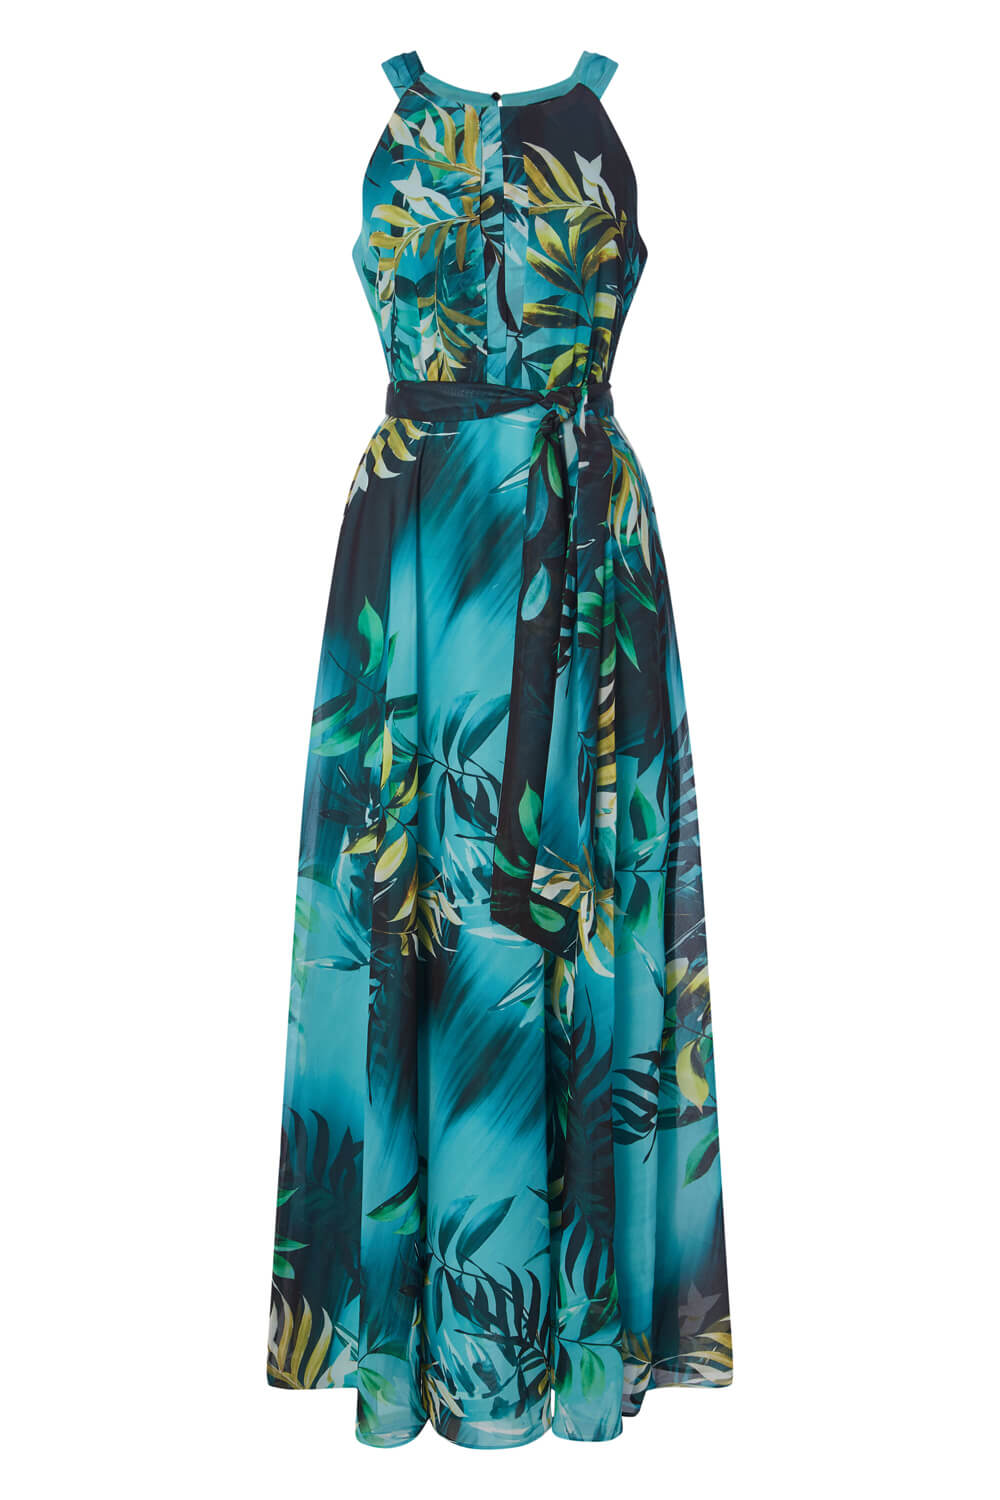 Aqua Tropical Print Maxi Dress, Image 5 of 5